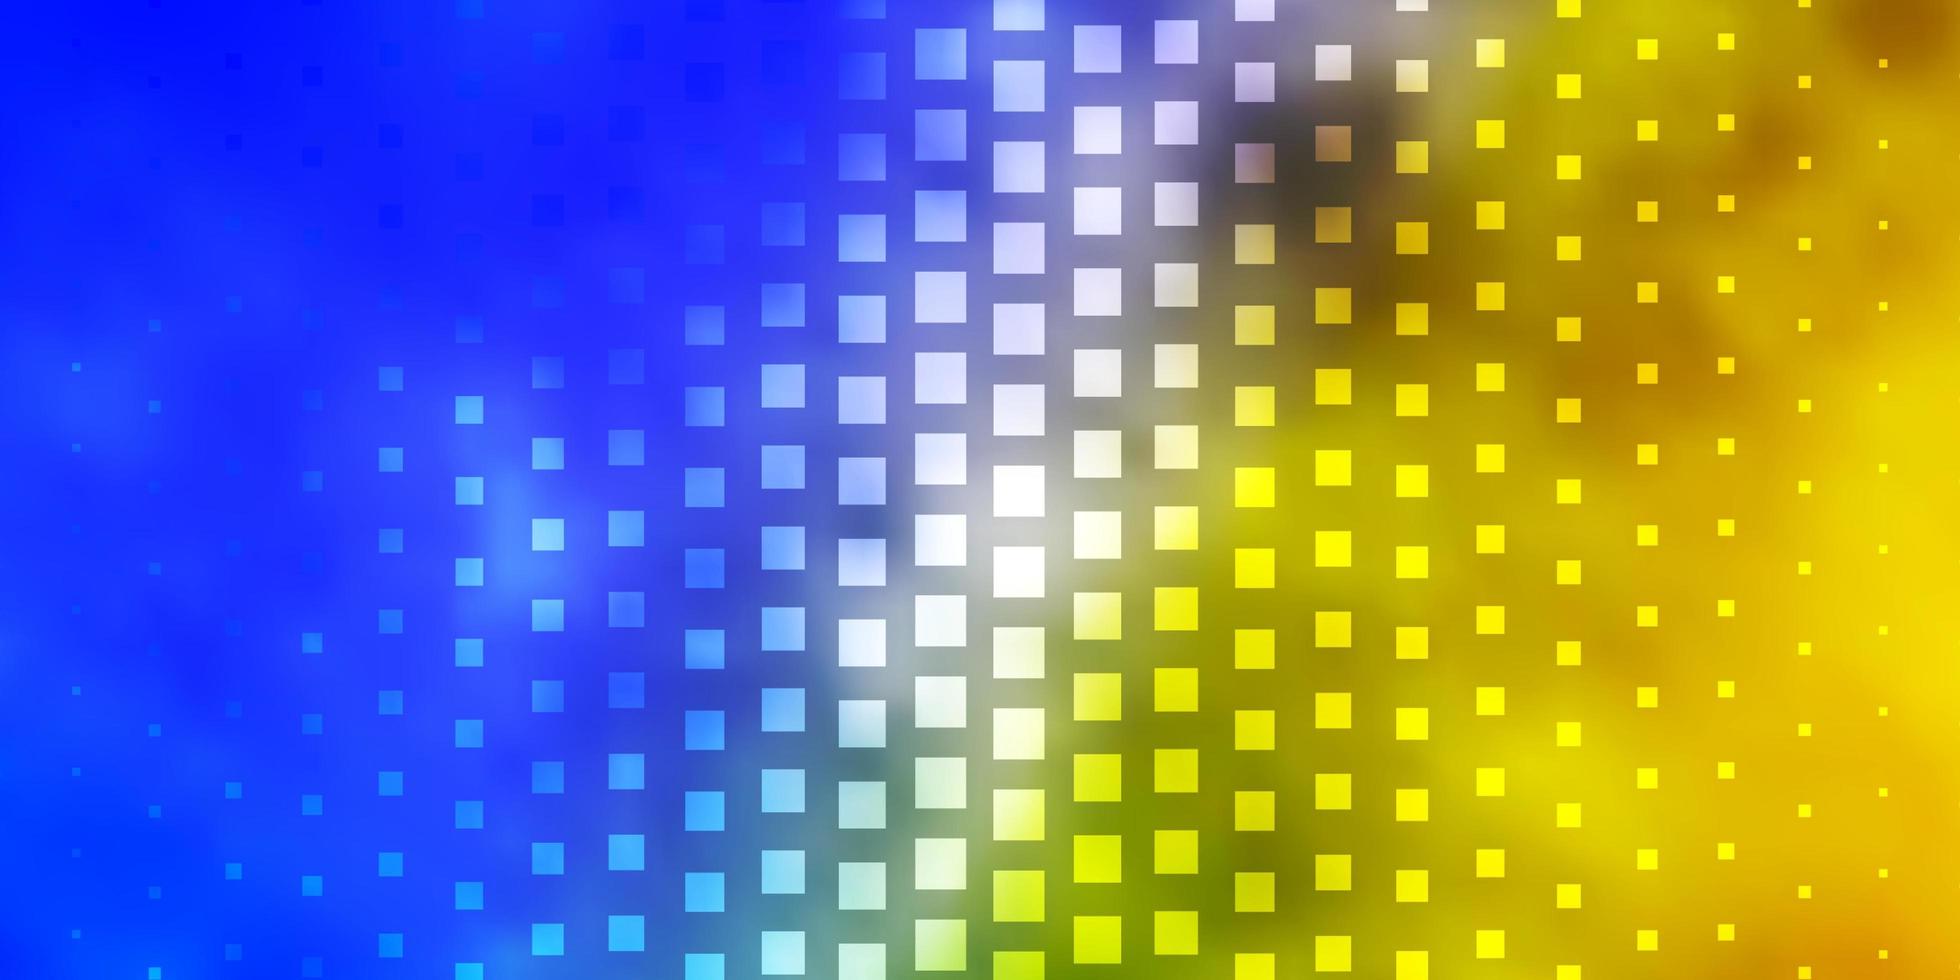 ljusblå, gul layout med linjer, rektanglar. vektor